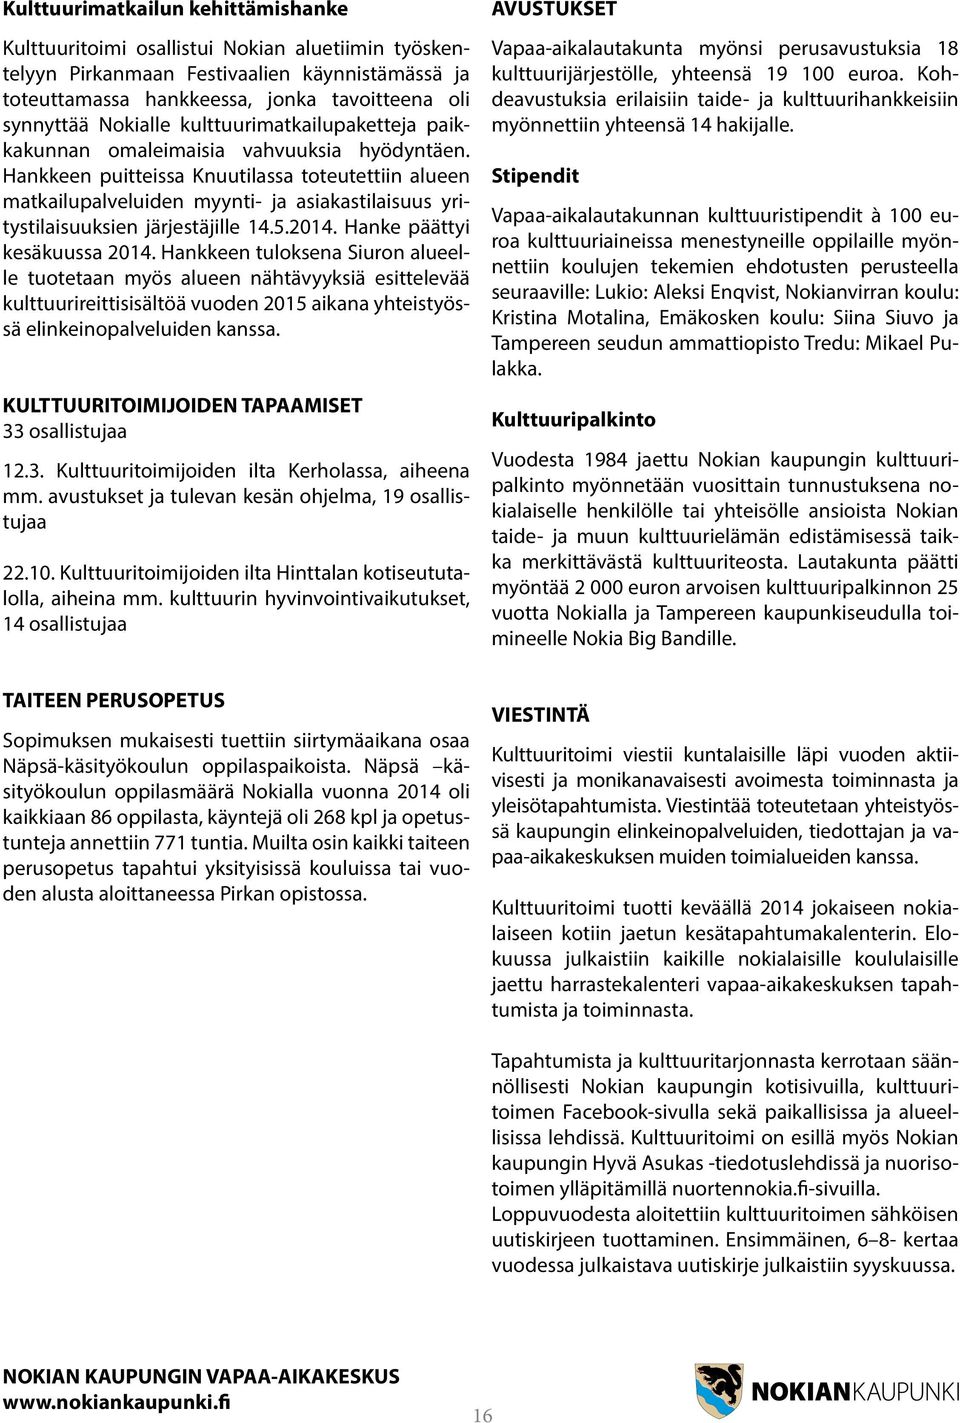 Hankkeen puitteissa Knuutilassa toteutettiin alueen matkailupalveluiden myynti- ja asiakastilaisuus yritystilaisuuksien järjestäjille 14.5.2014. Hanke päättyi kesäkuussa 2014.